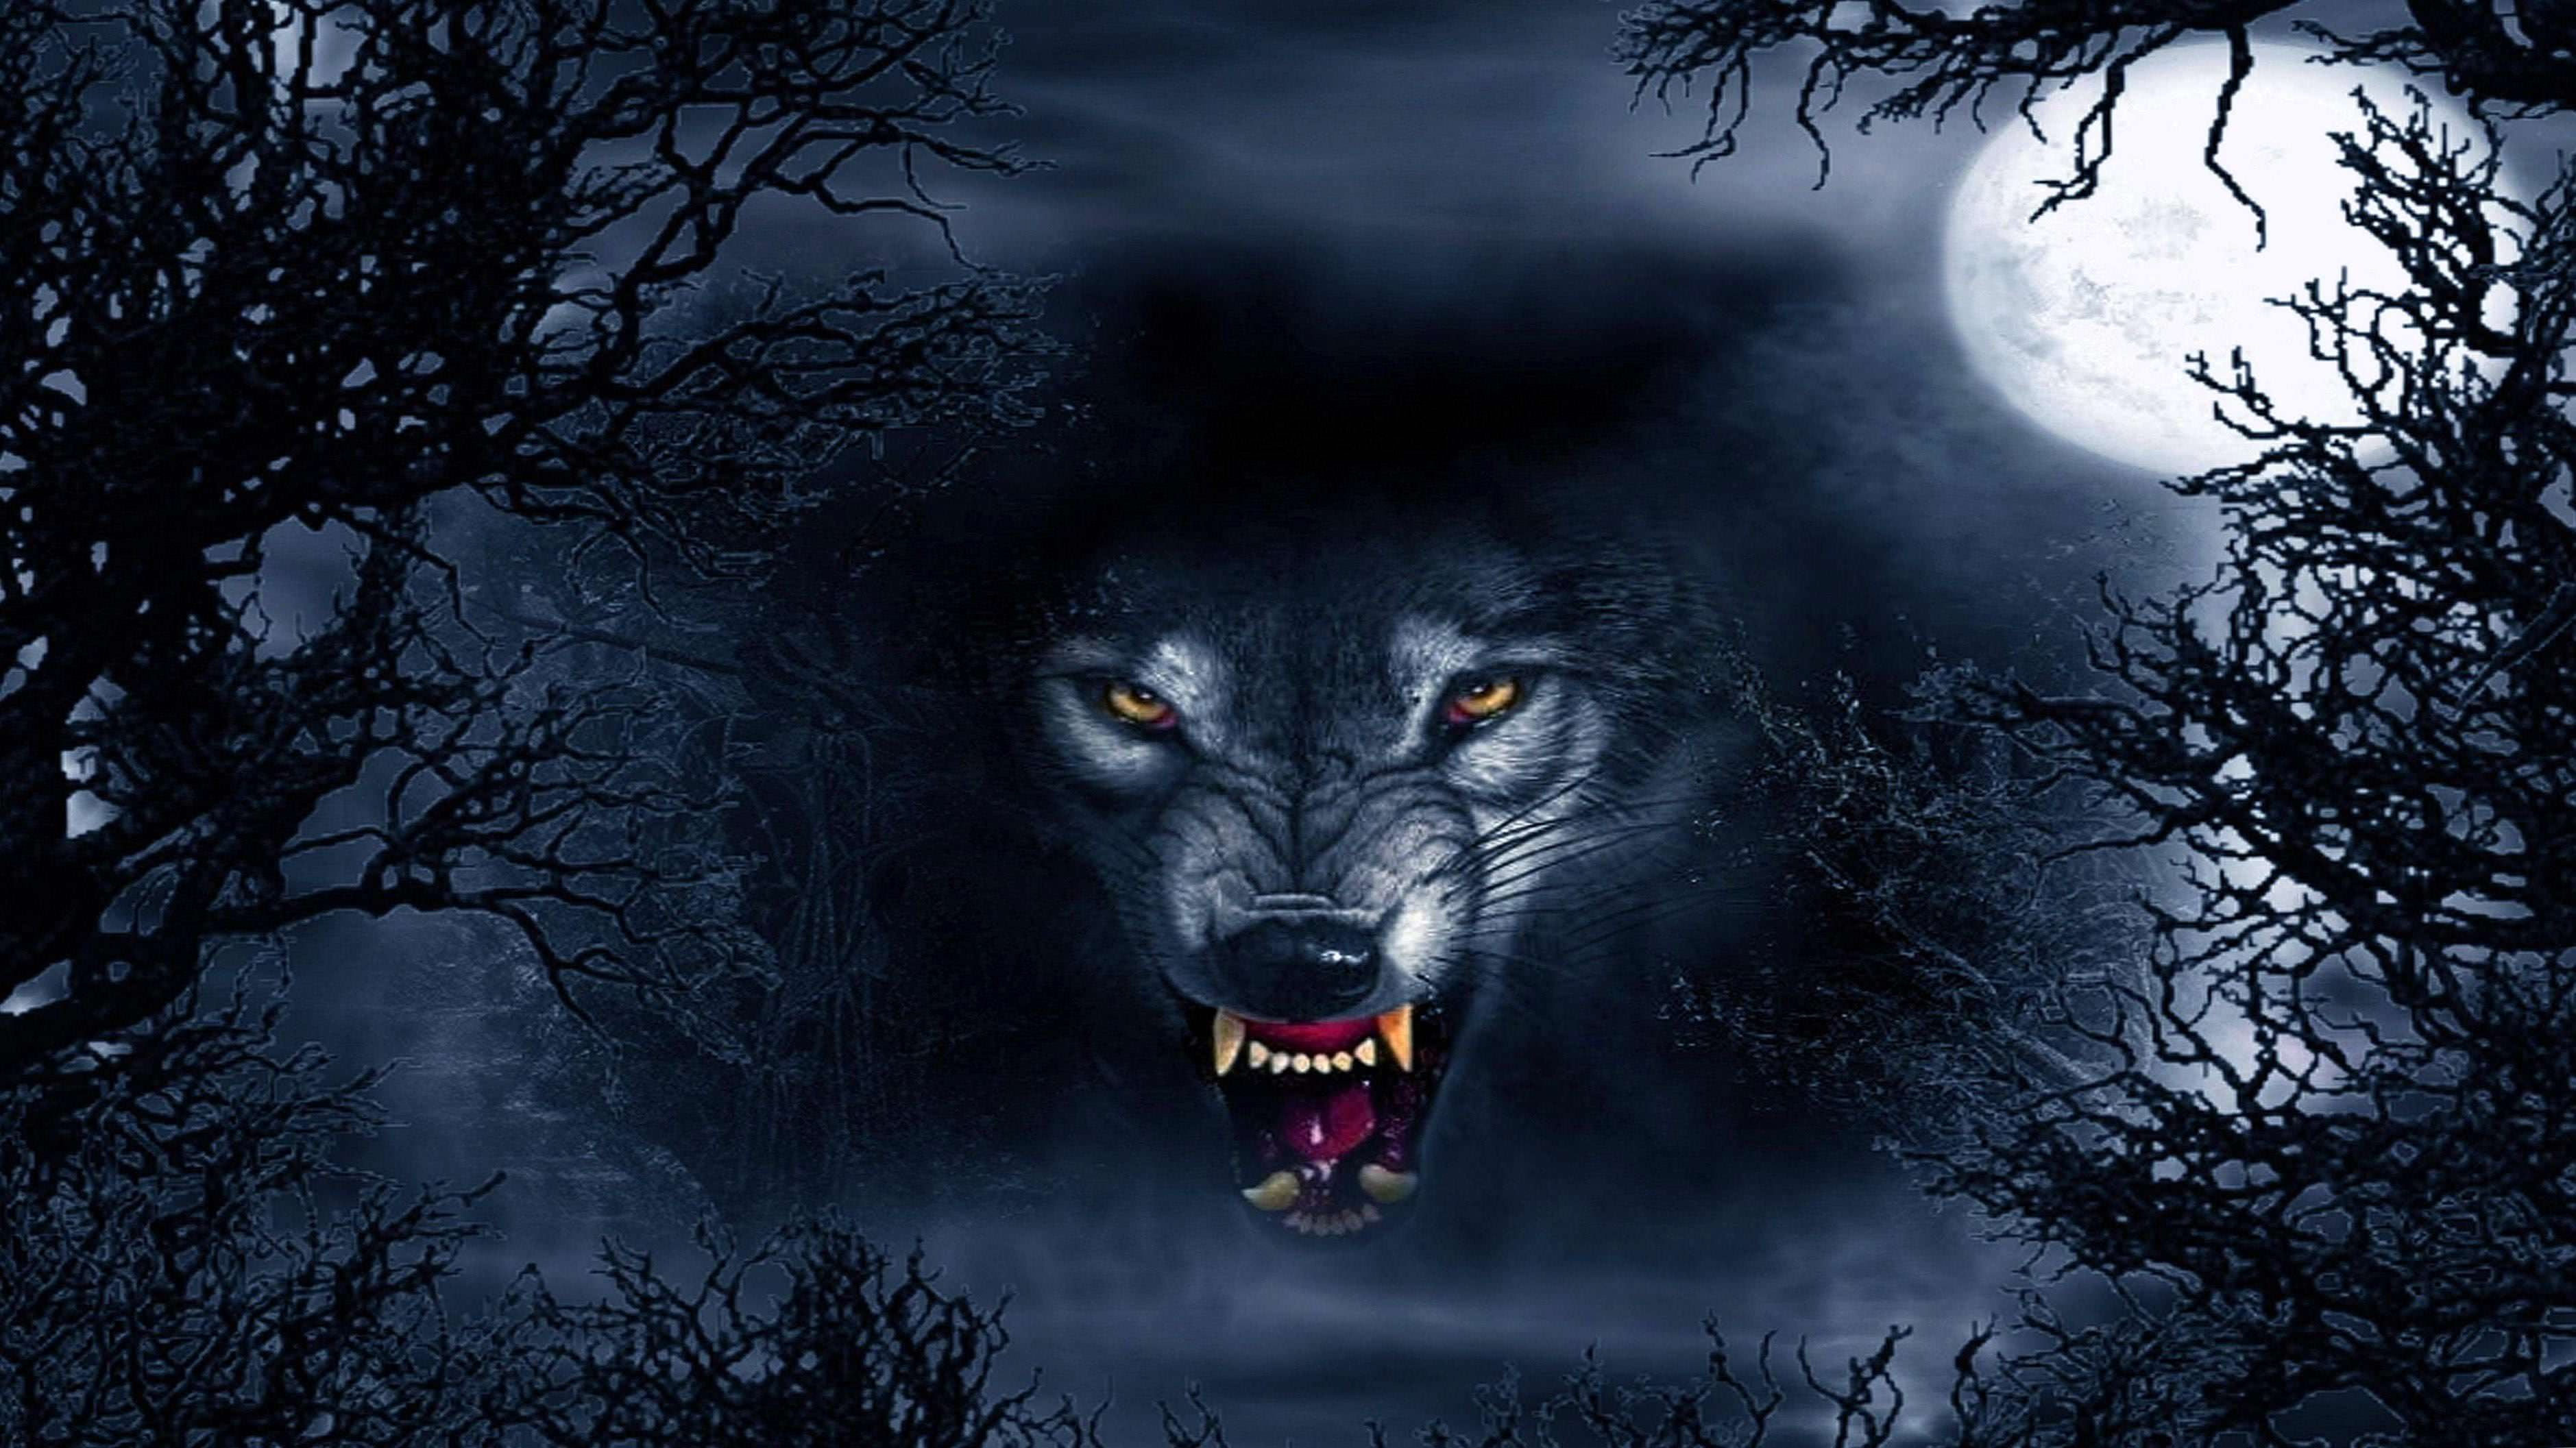 wolf dark 1920×1080 wallpaper background image 3